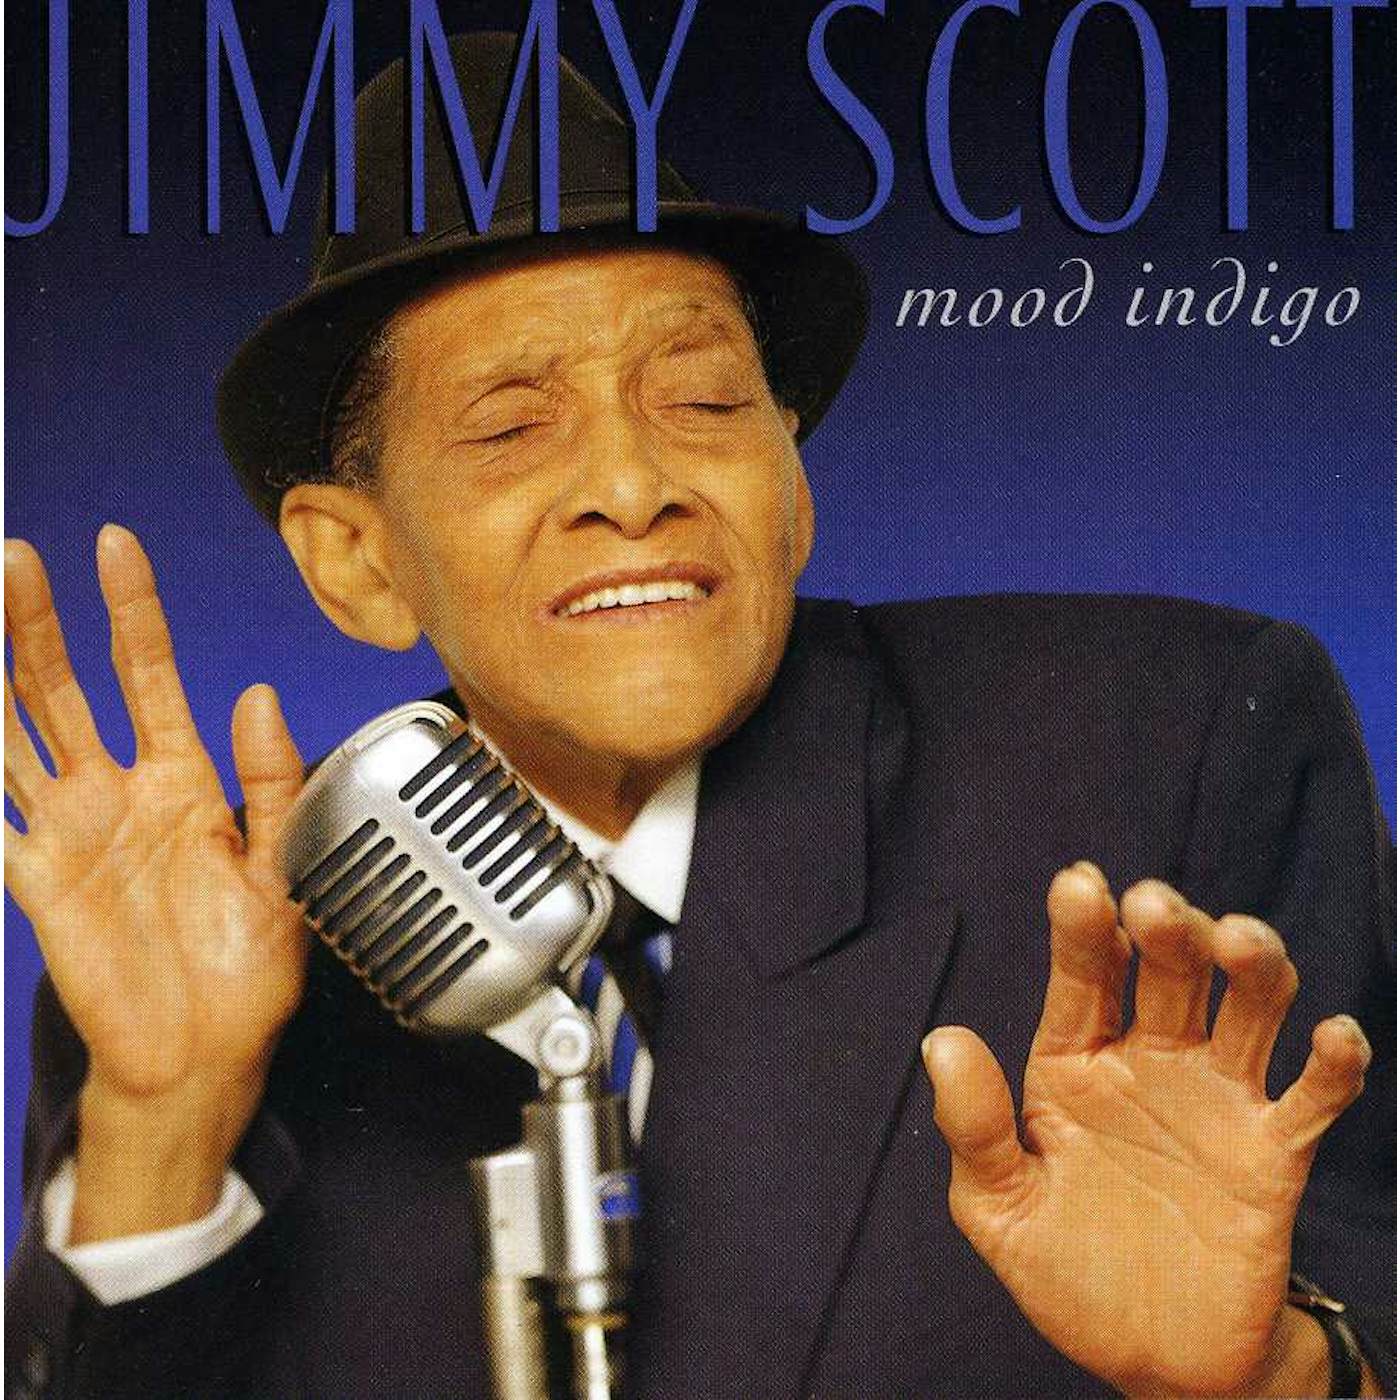 Jimmy Scott MOOD INDIGO CD